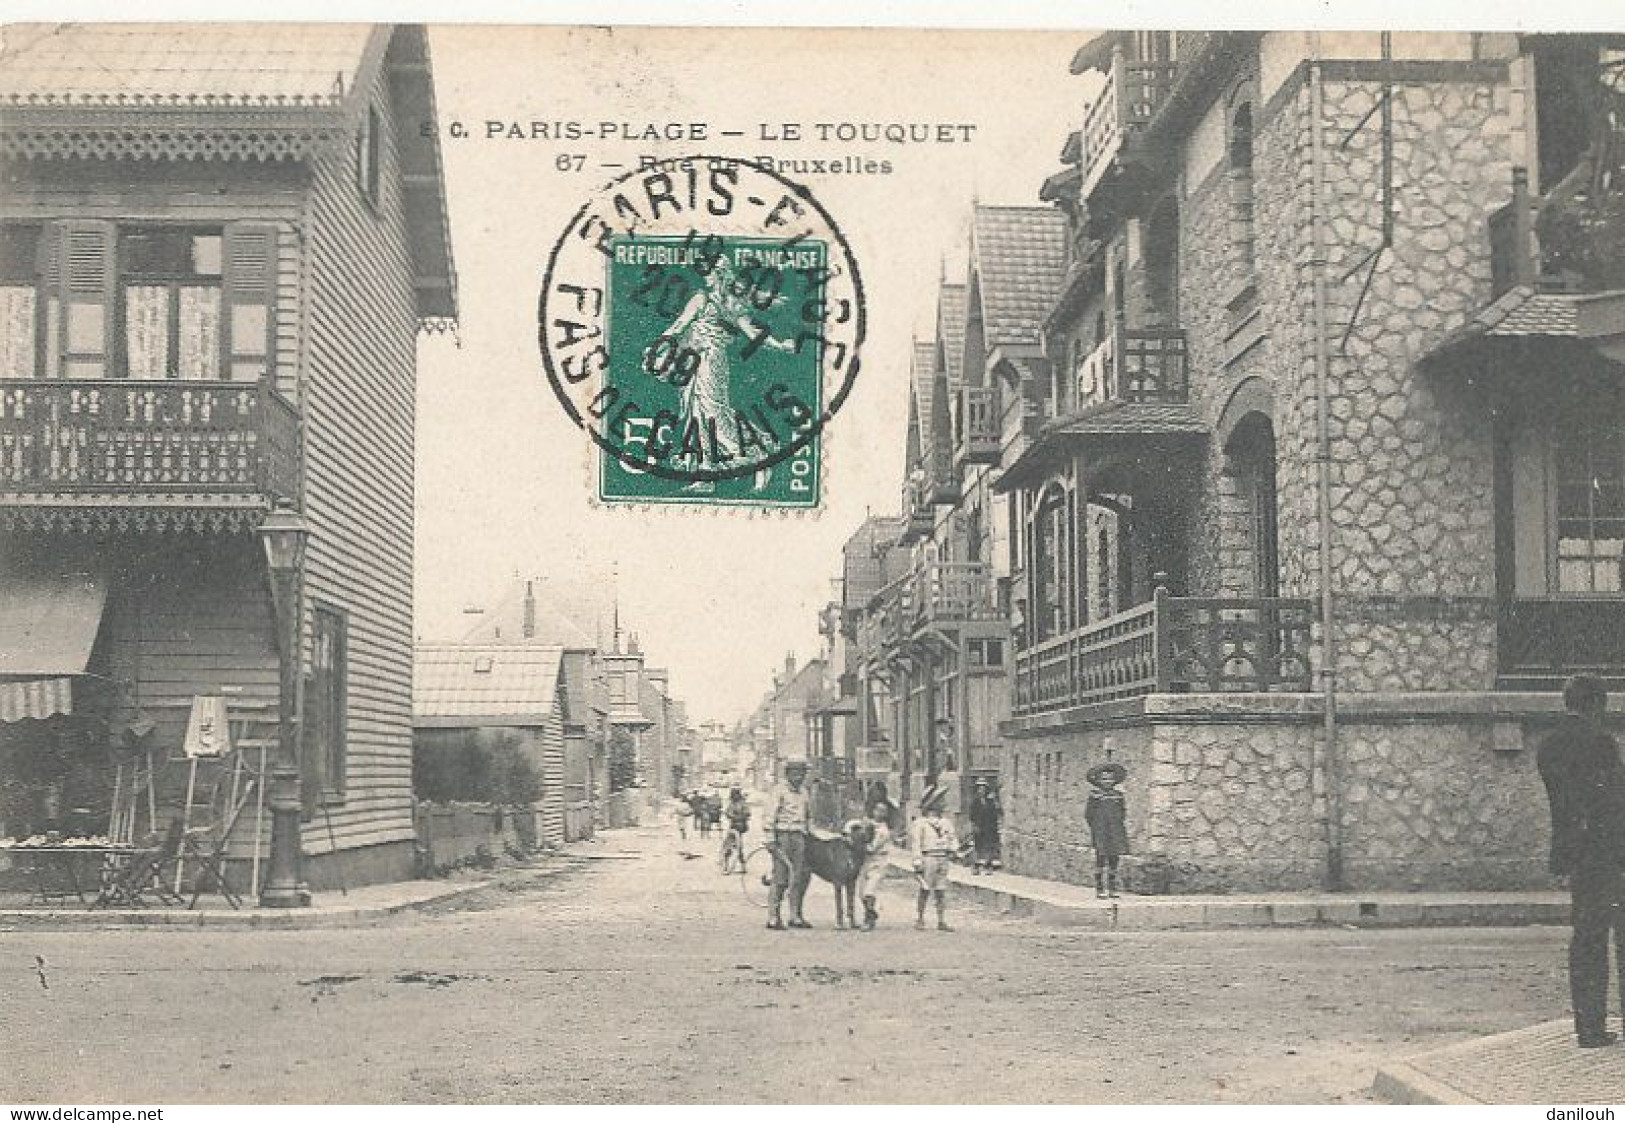 62 // PARIS PLAGE - LE TOUQUET    Rue De Bruxelles  67 - Transformers